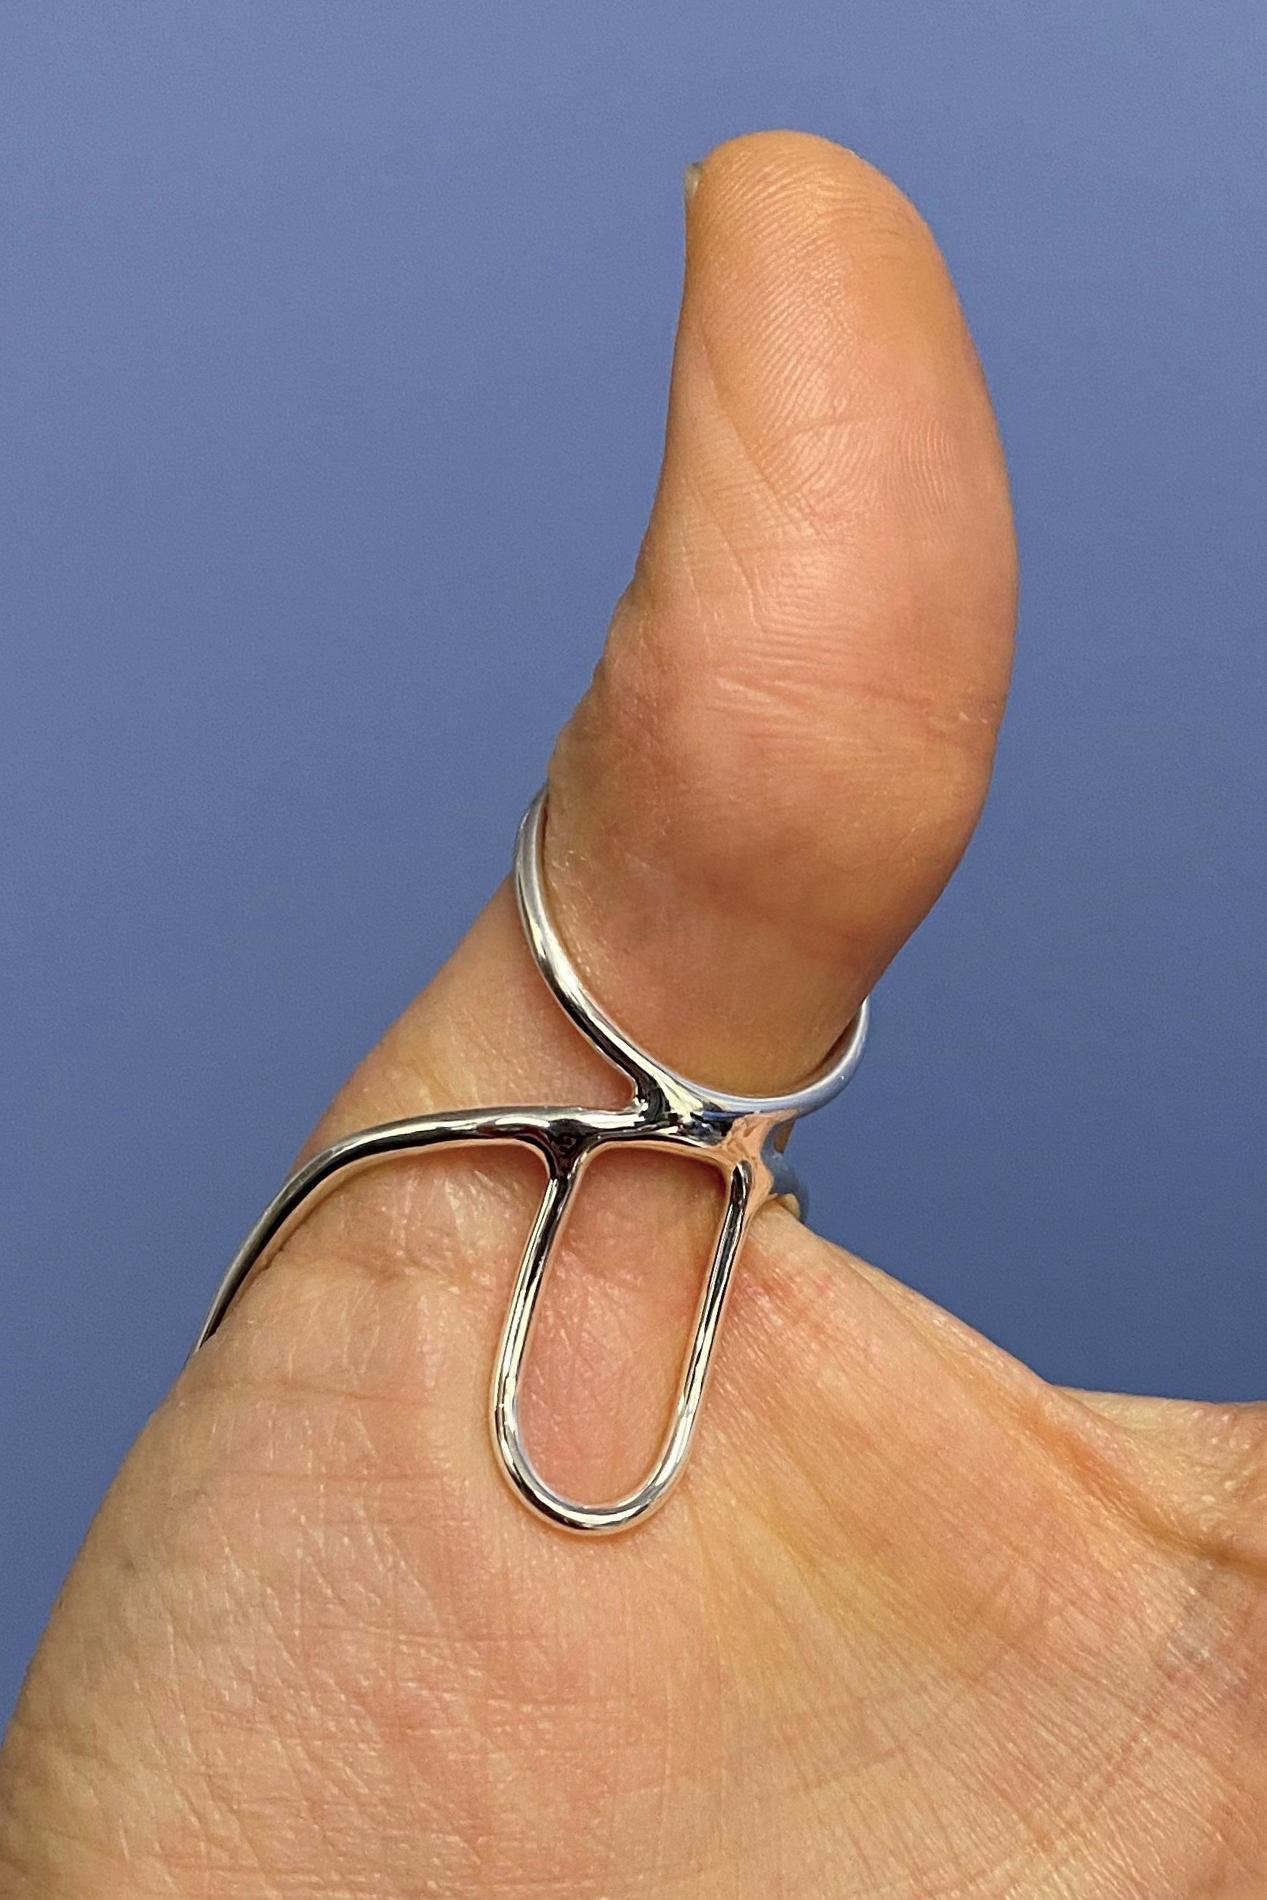 Thumb MCP Splint with PVX Silver Ring Splint